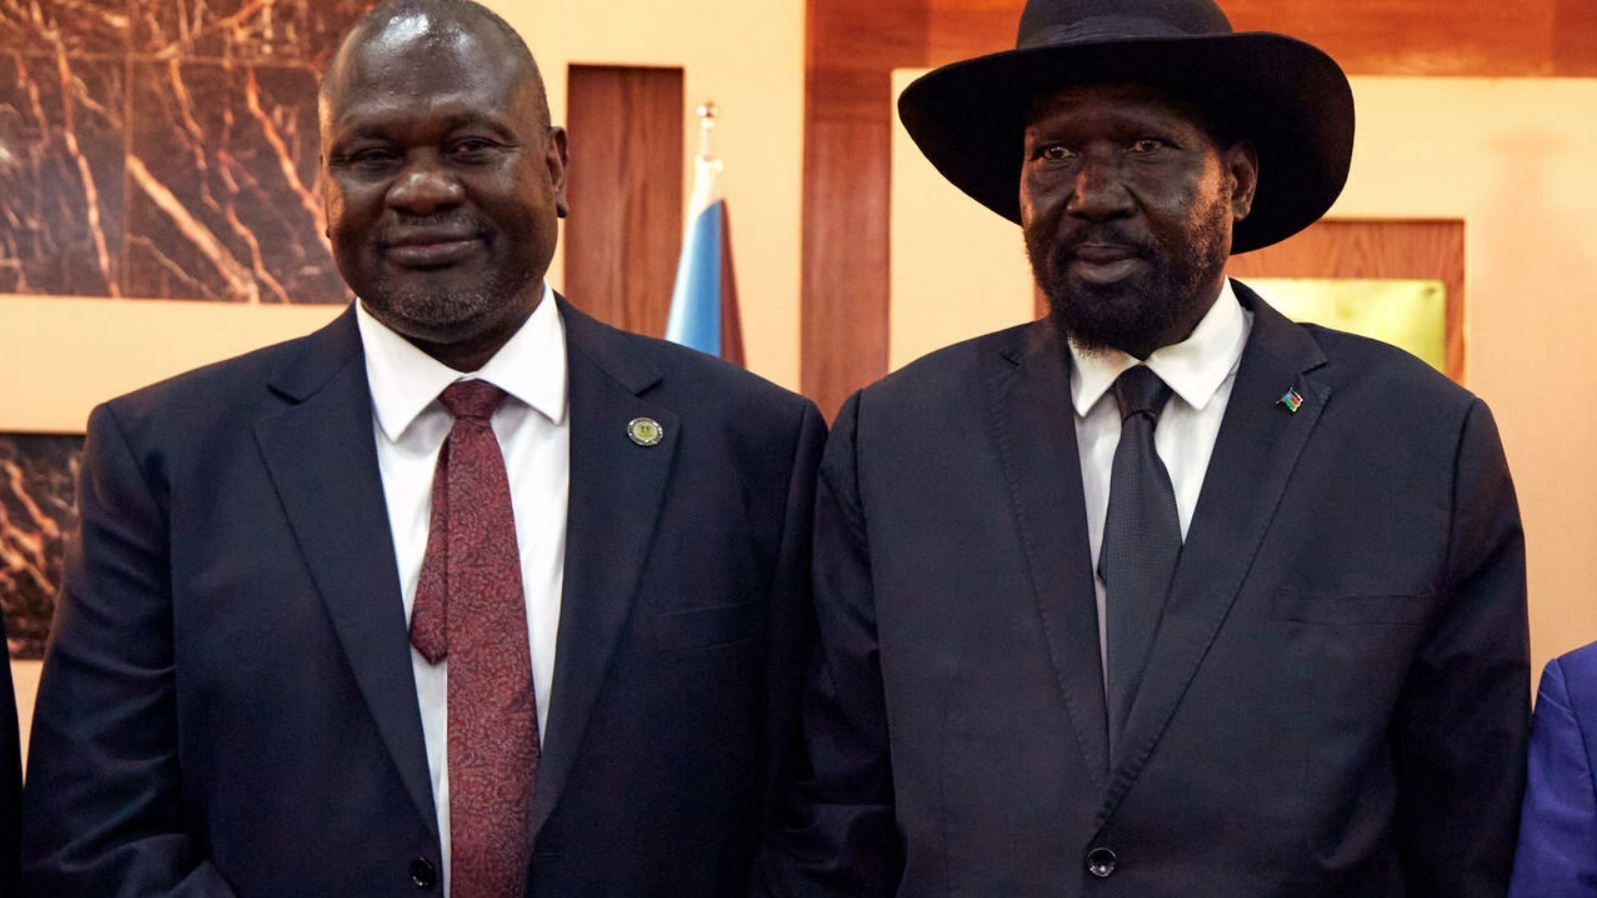 رئيس جنوب السودان سلفا كير (يمين) ونائبه رياك مشار في جوبا بتاريخ 22 فبراير 2020